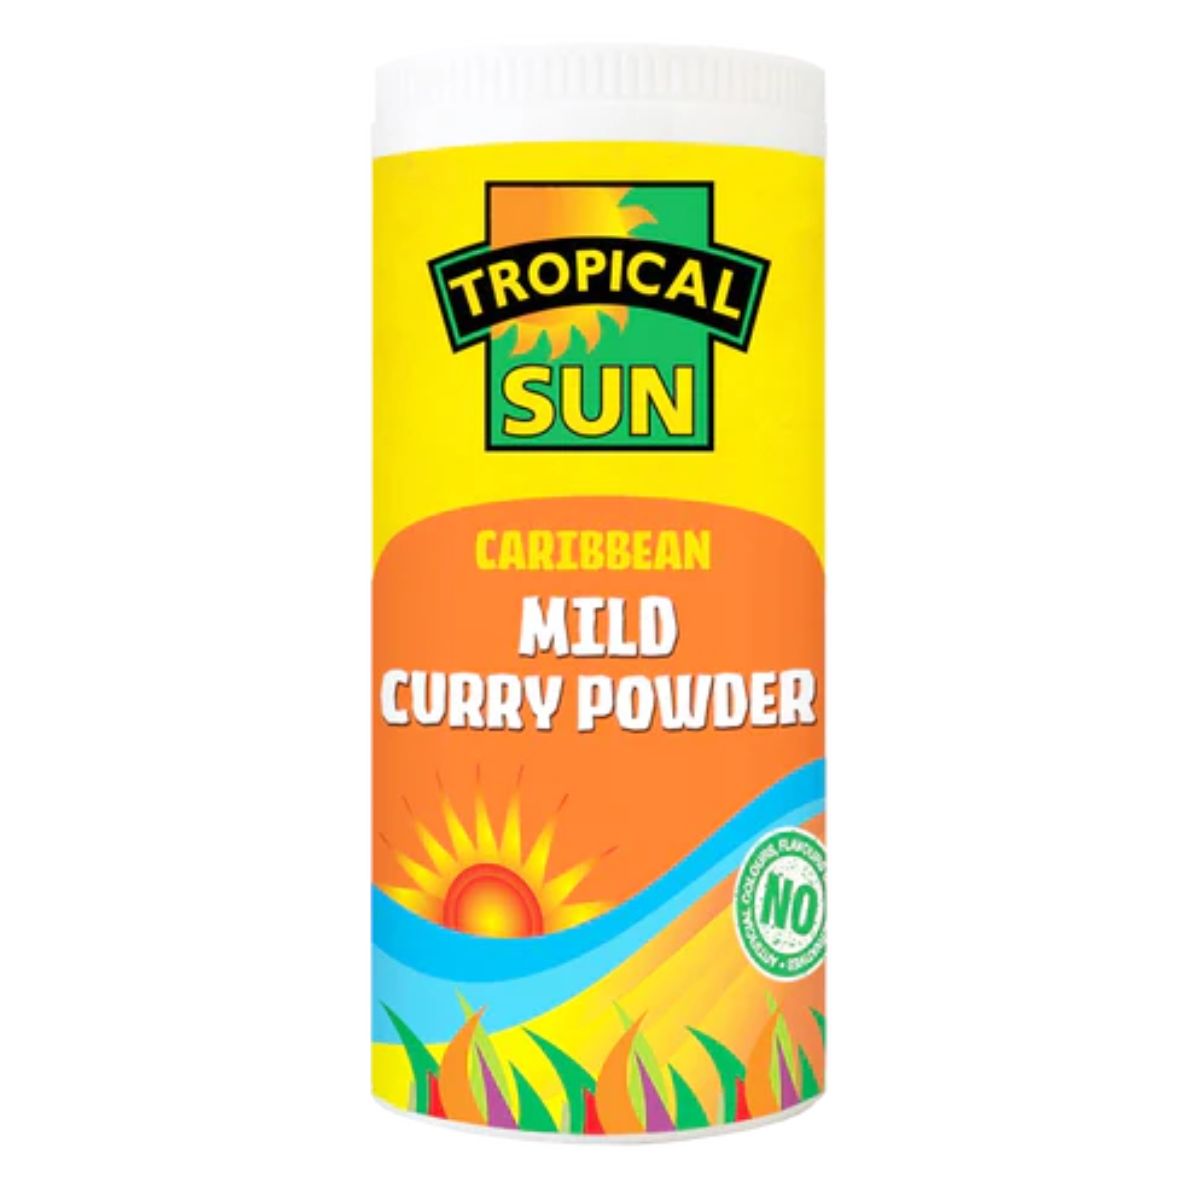 Tropical Sun - Caribbean Mild Curry Powder - 100g caribbean mild curry powder.